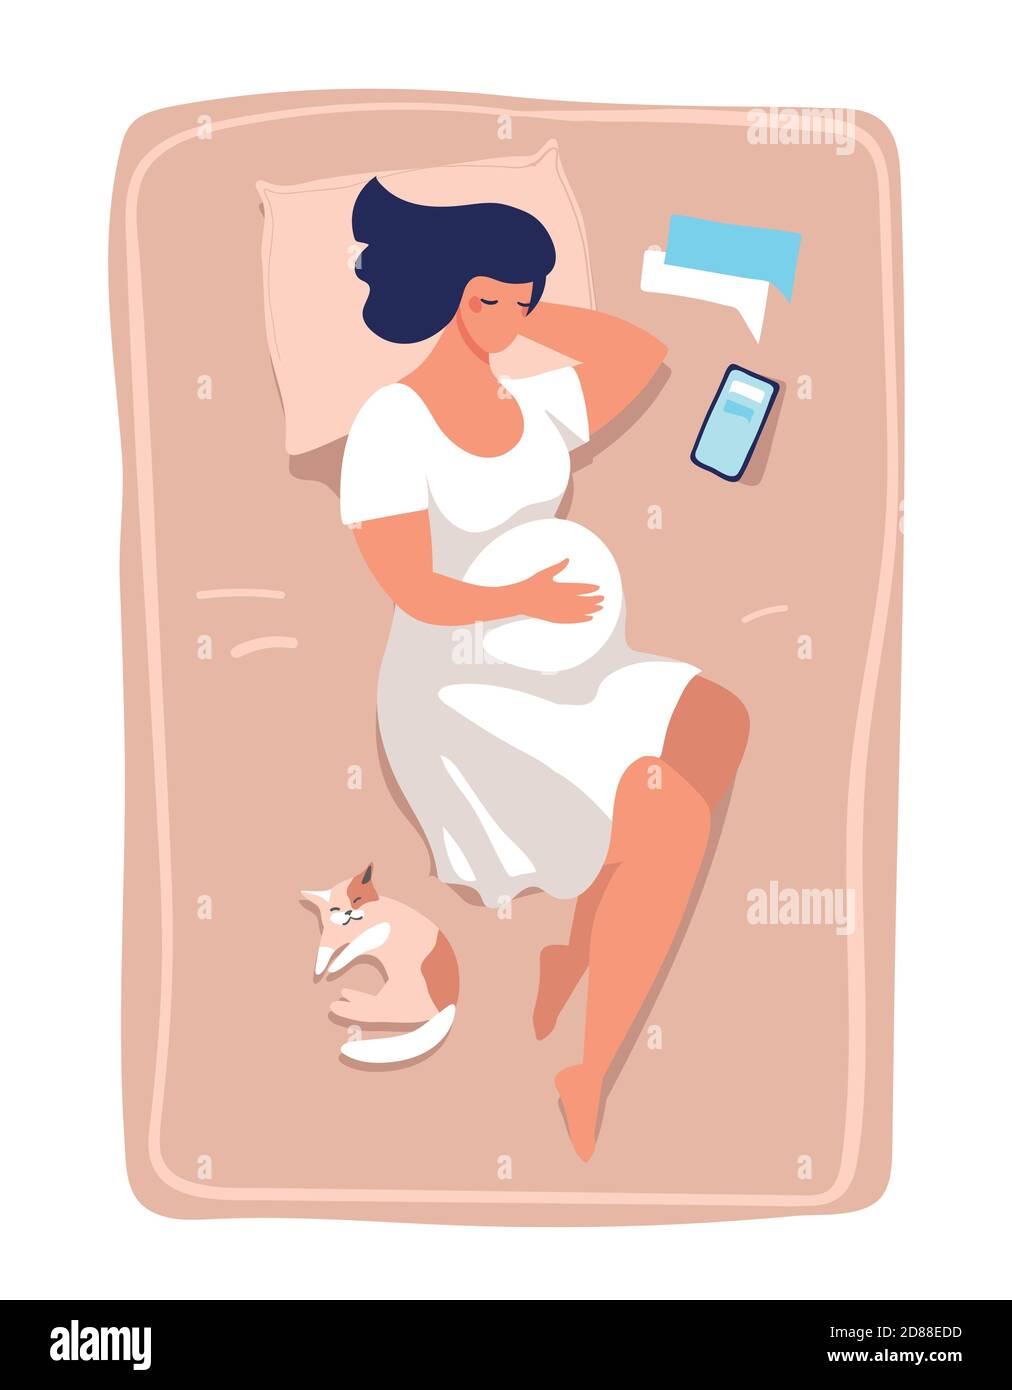 Una giovane donna incinta si trova e dorme sul letto. Illustrazione della gravidanza e del parto, della salute e del relax. Immagine vettoriale piatta isolata su sfondo bianco Illustrazione Vettoriale